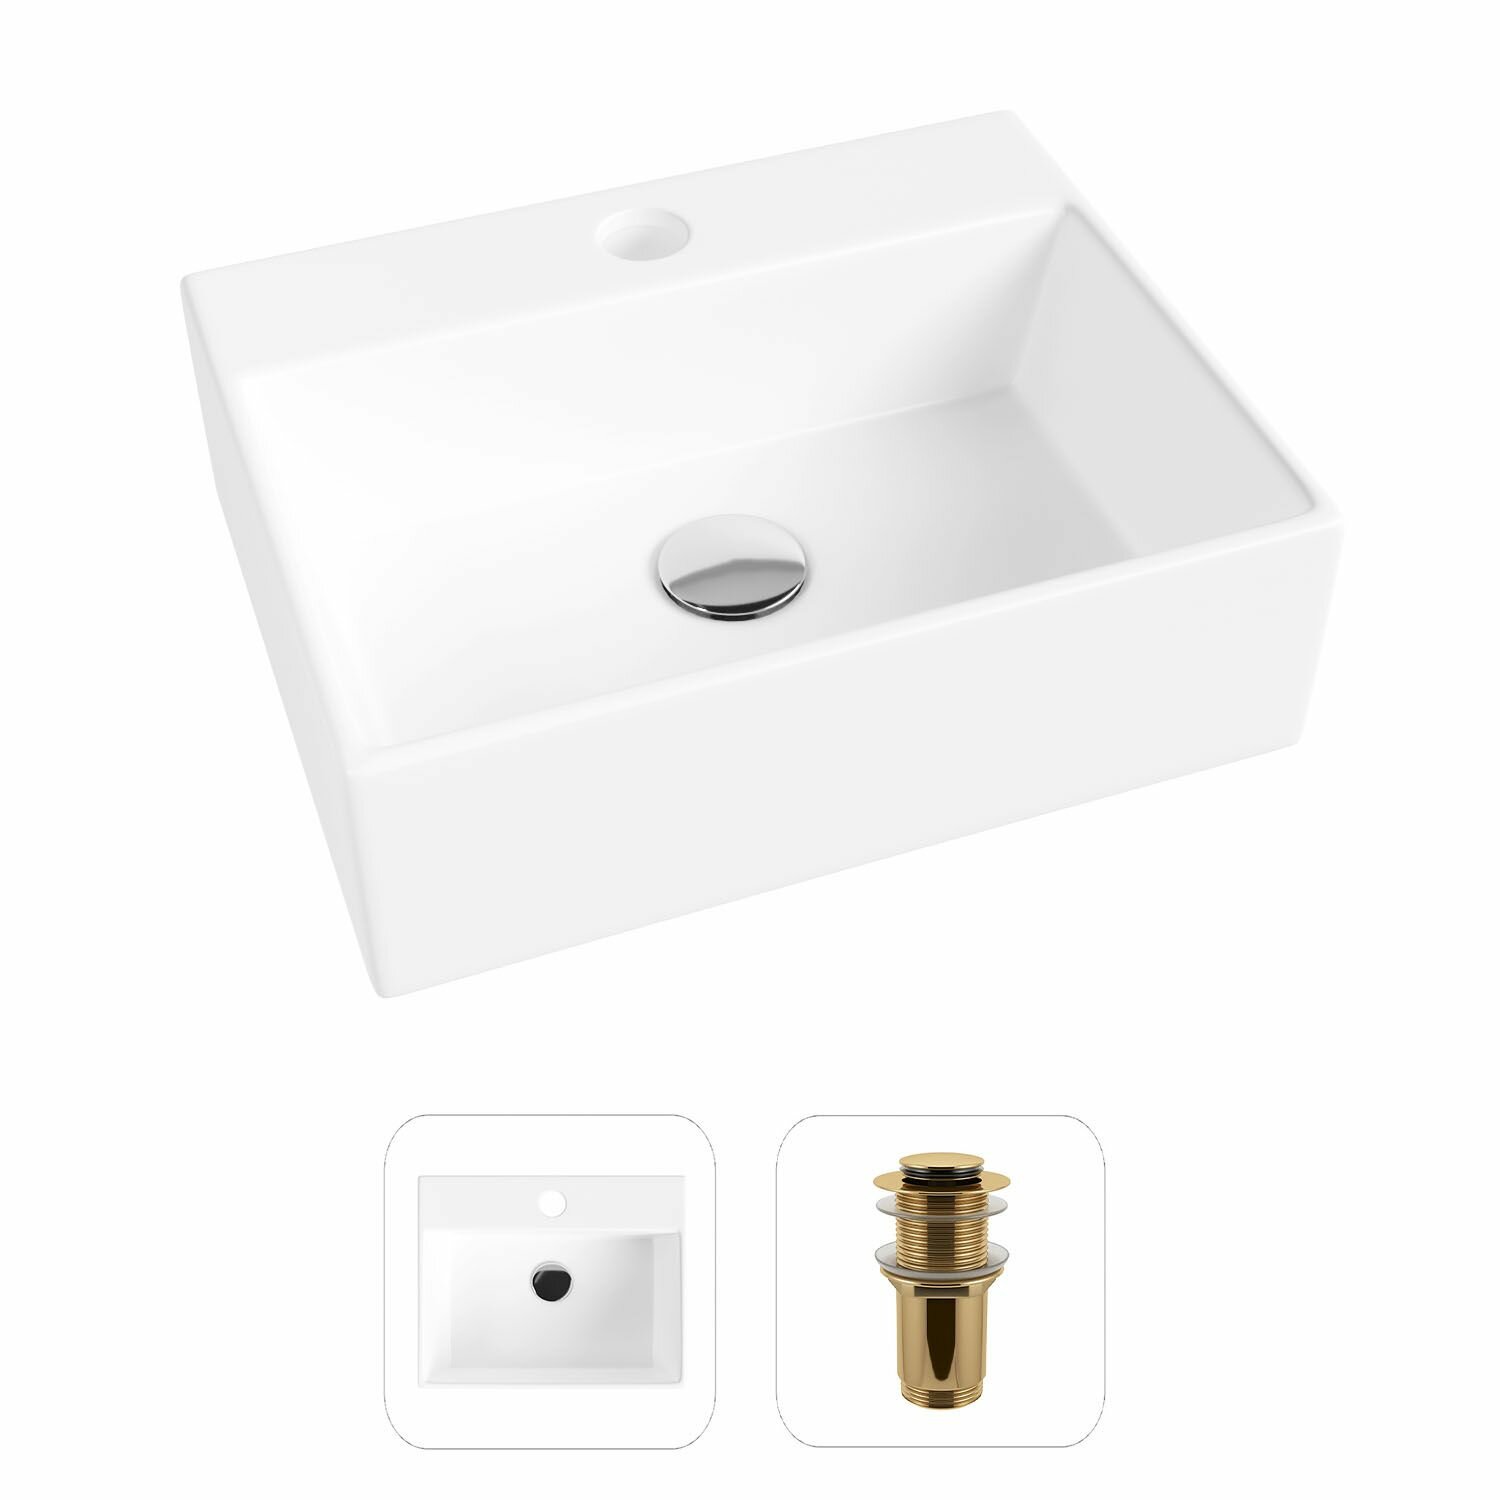 Накладная раковина в ванную Helmken 34439000 комплект 2 в 1: умывальник прямоугольный 39 см, донный клапан click-clack в цвете золото